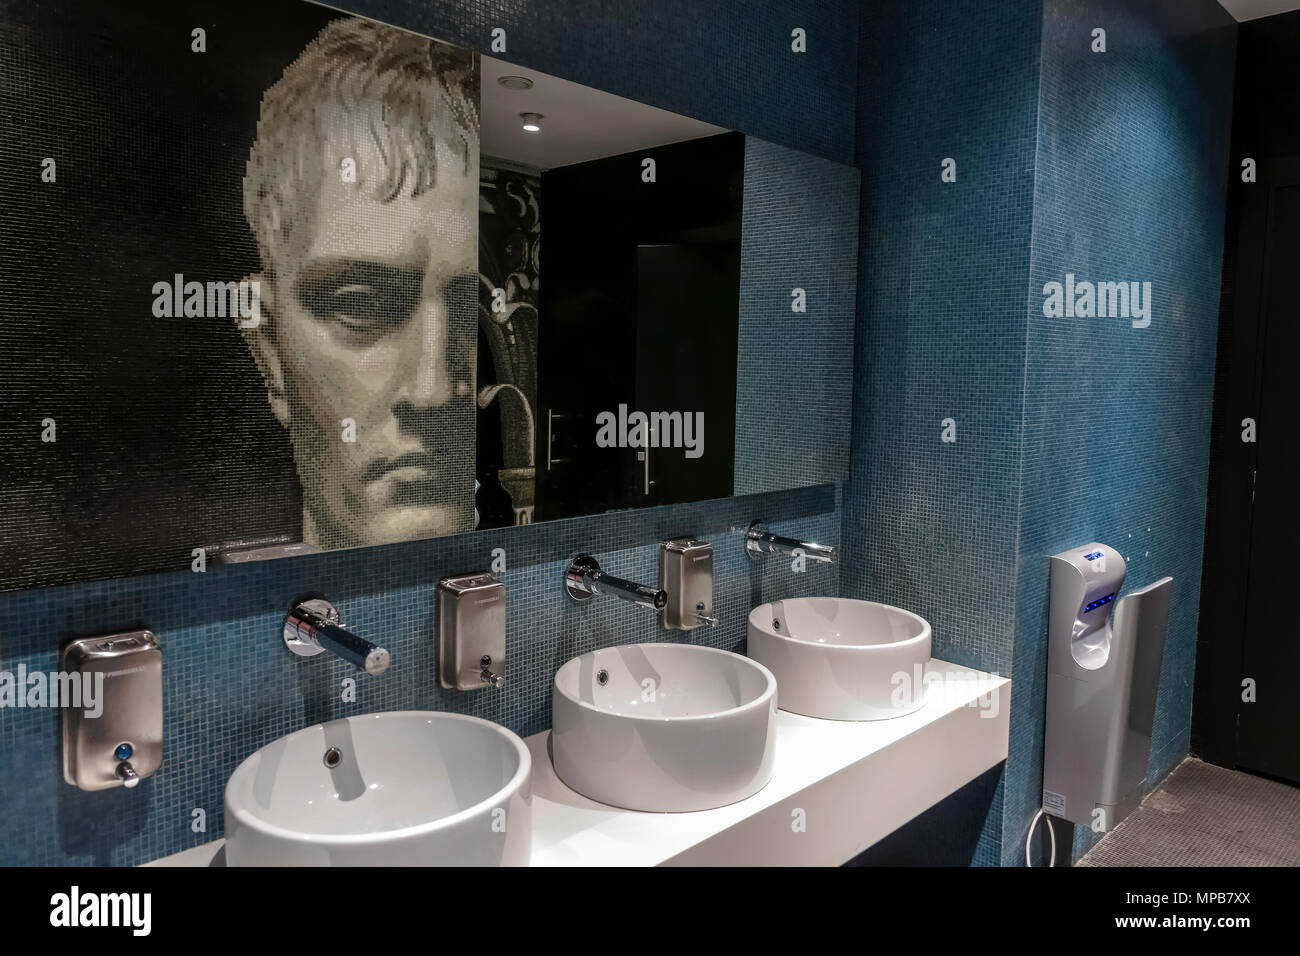 Toilettes modernes hommes à queue bleue, toilettes, grand magasin Rinascente. Portrait en mosaïque du jeune homme romain, vu dans un miroir opposé. Rome, Italie. Banque D'Images